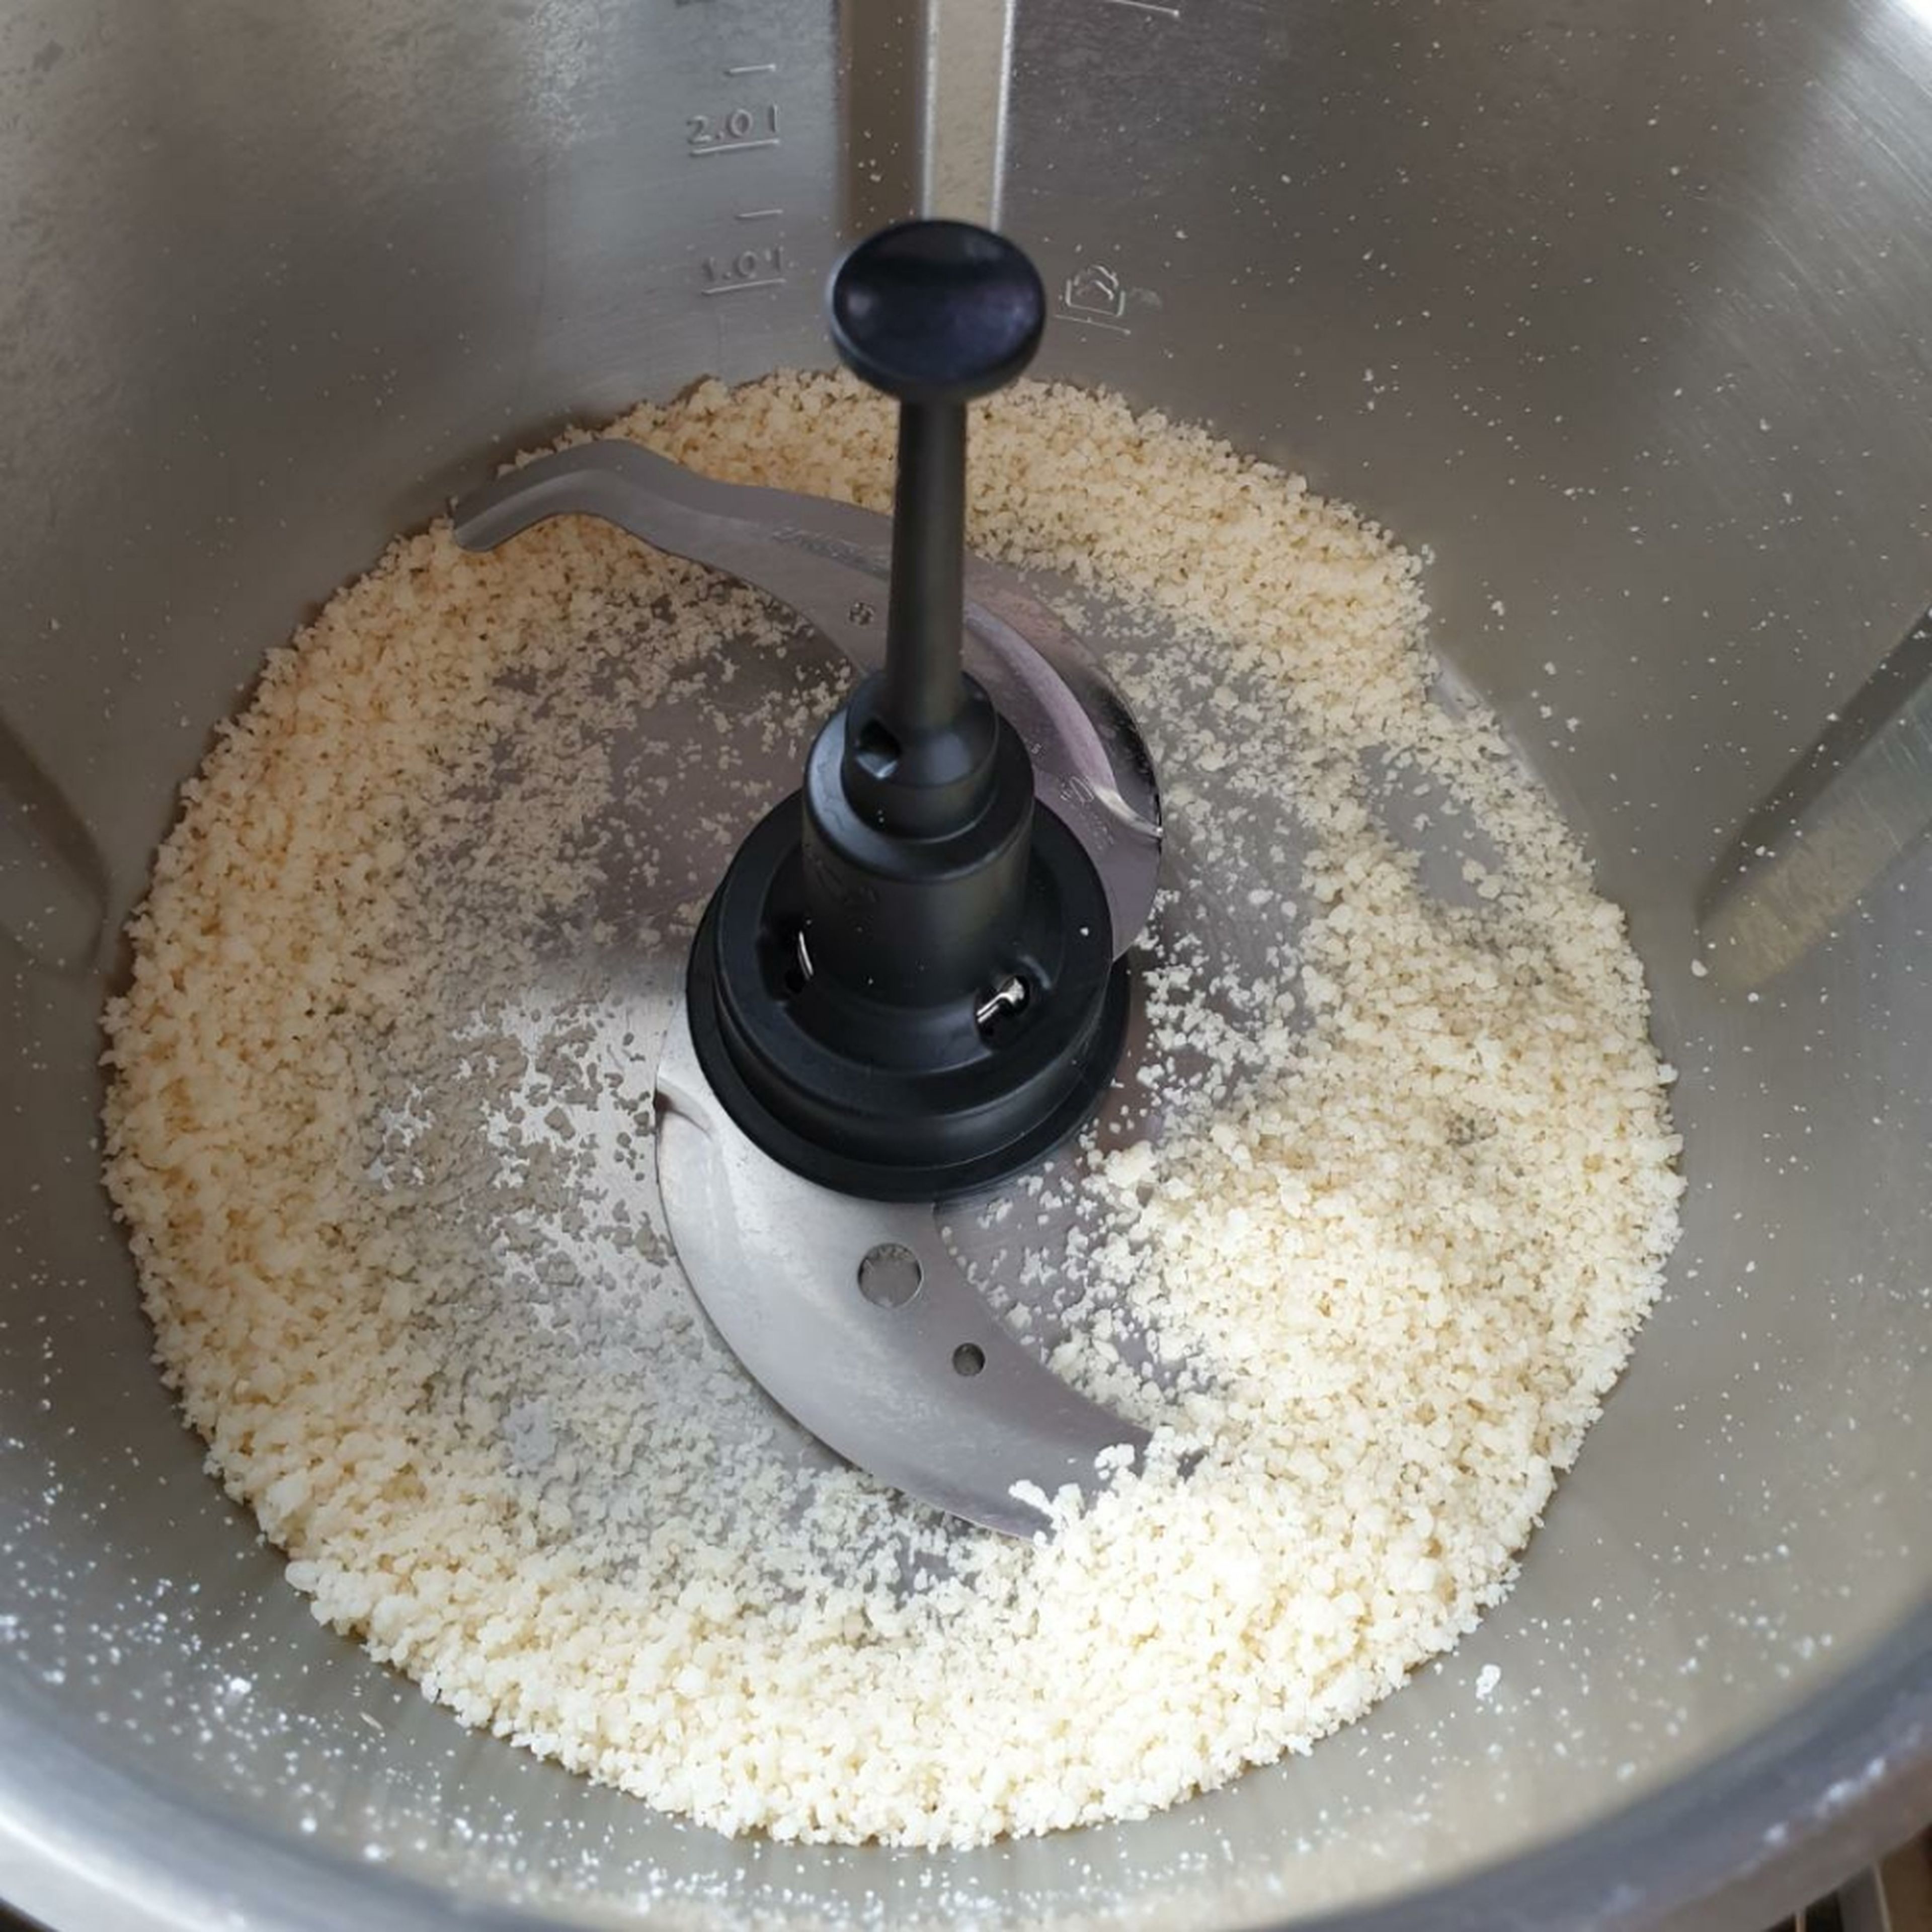 Das Universalmesser in den Cookit einsetzen. Den Parmesan in ungefähr 2 cm große Stücke schneiden und in den Topf geben. Den Deckel schließen, den Messbecher einsetzen und den Parmesan zerkleinern (Universalmesser | Stufe 13 | 45 Sekunden). 
Den zerkleinerten Parmesan aus dem Topf in eine Schüssel geben.